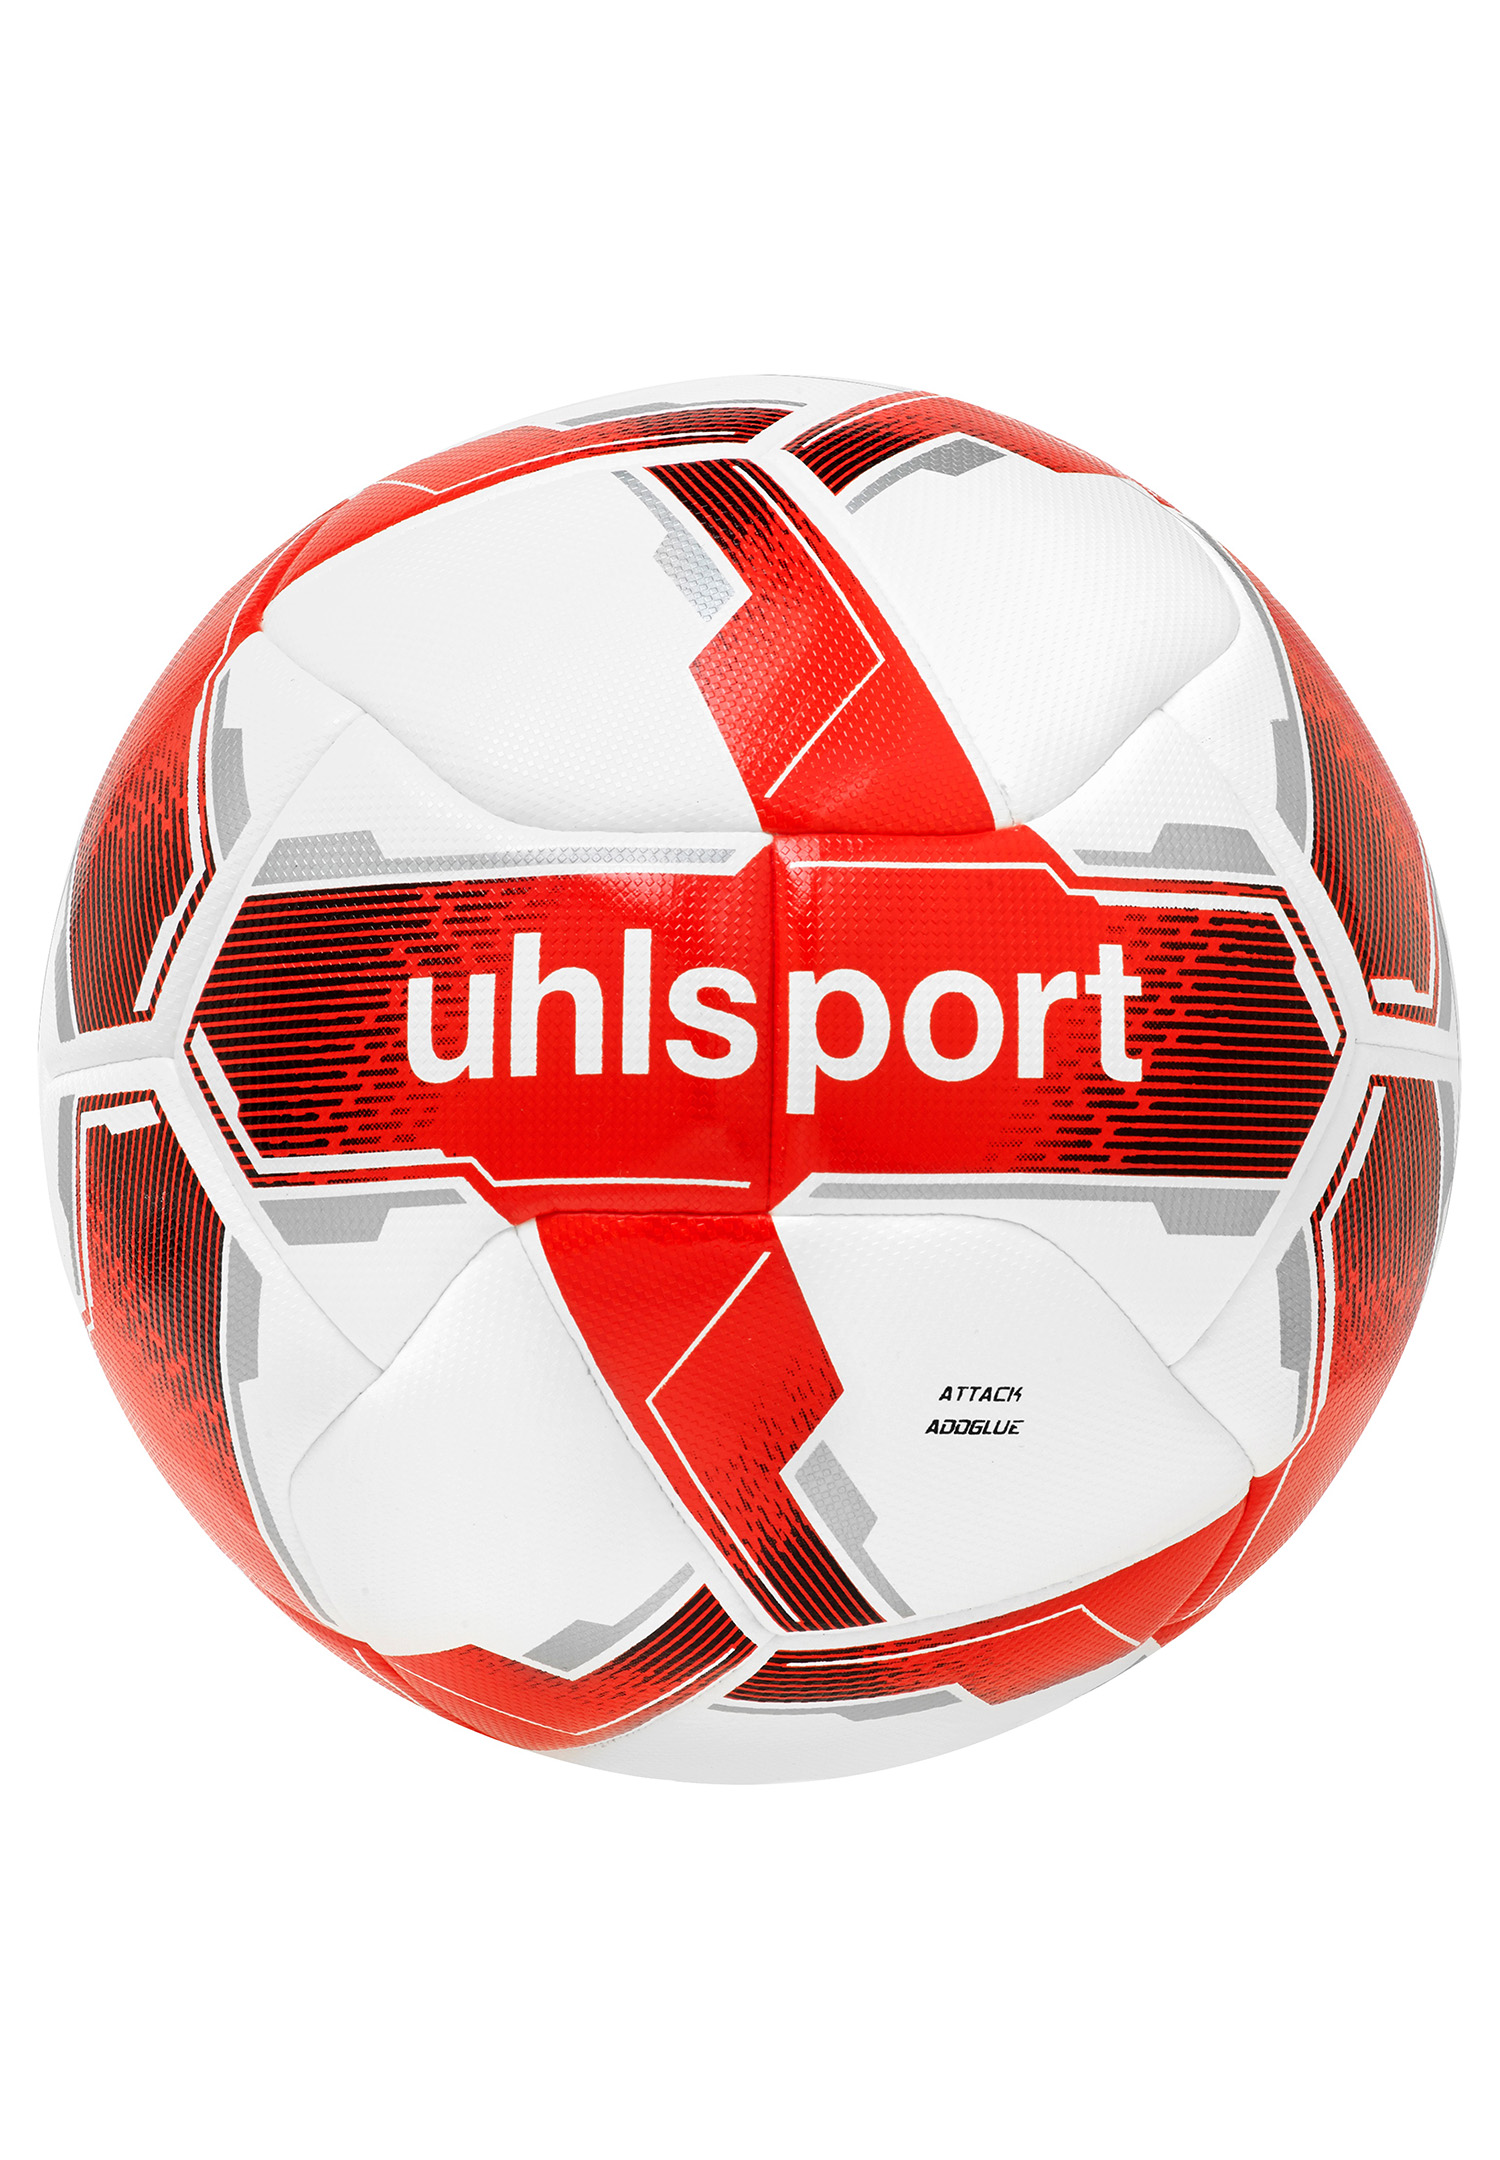 Uhlsport ATTACK ADDGLUE Fussball Spiel- und Training Ball 100175103 Gr. 5